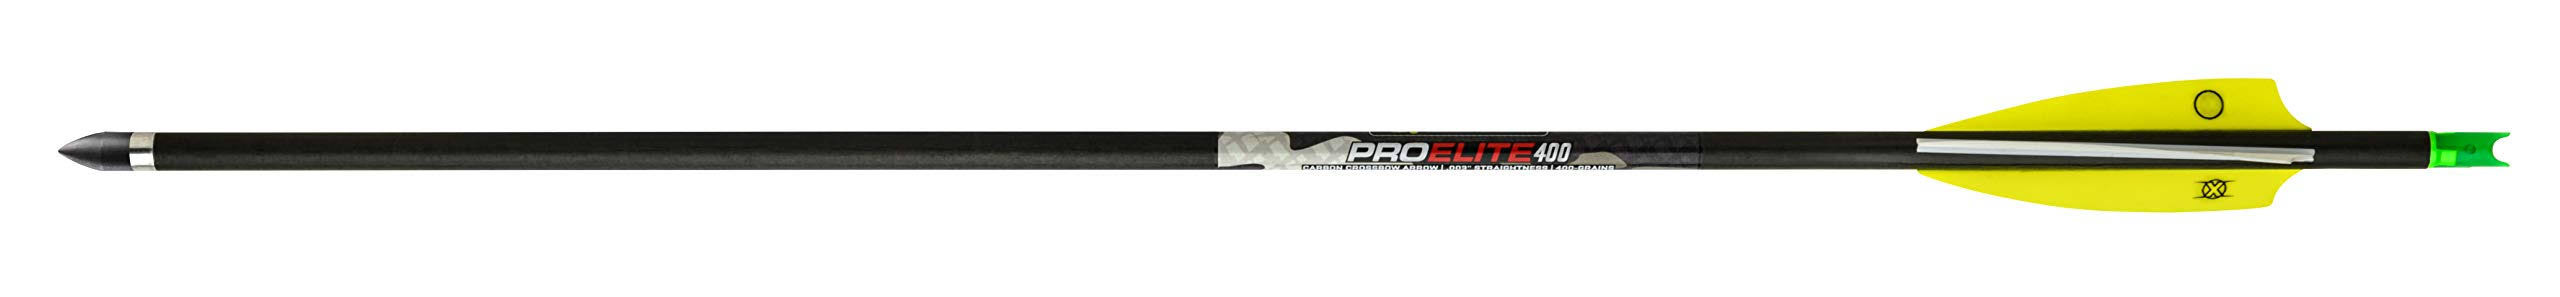 TenPoint Pro Elite 400 Carbon Crossbow Arrows 20" .003", 6 Pack